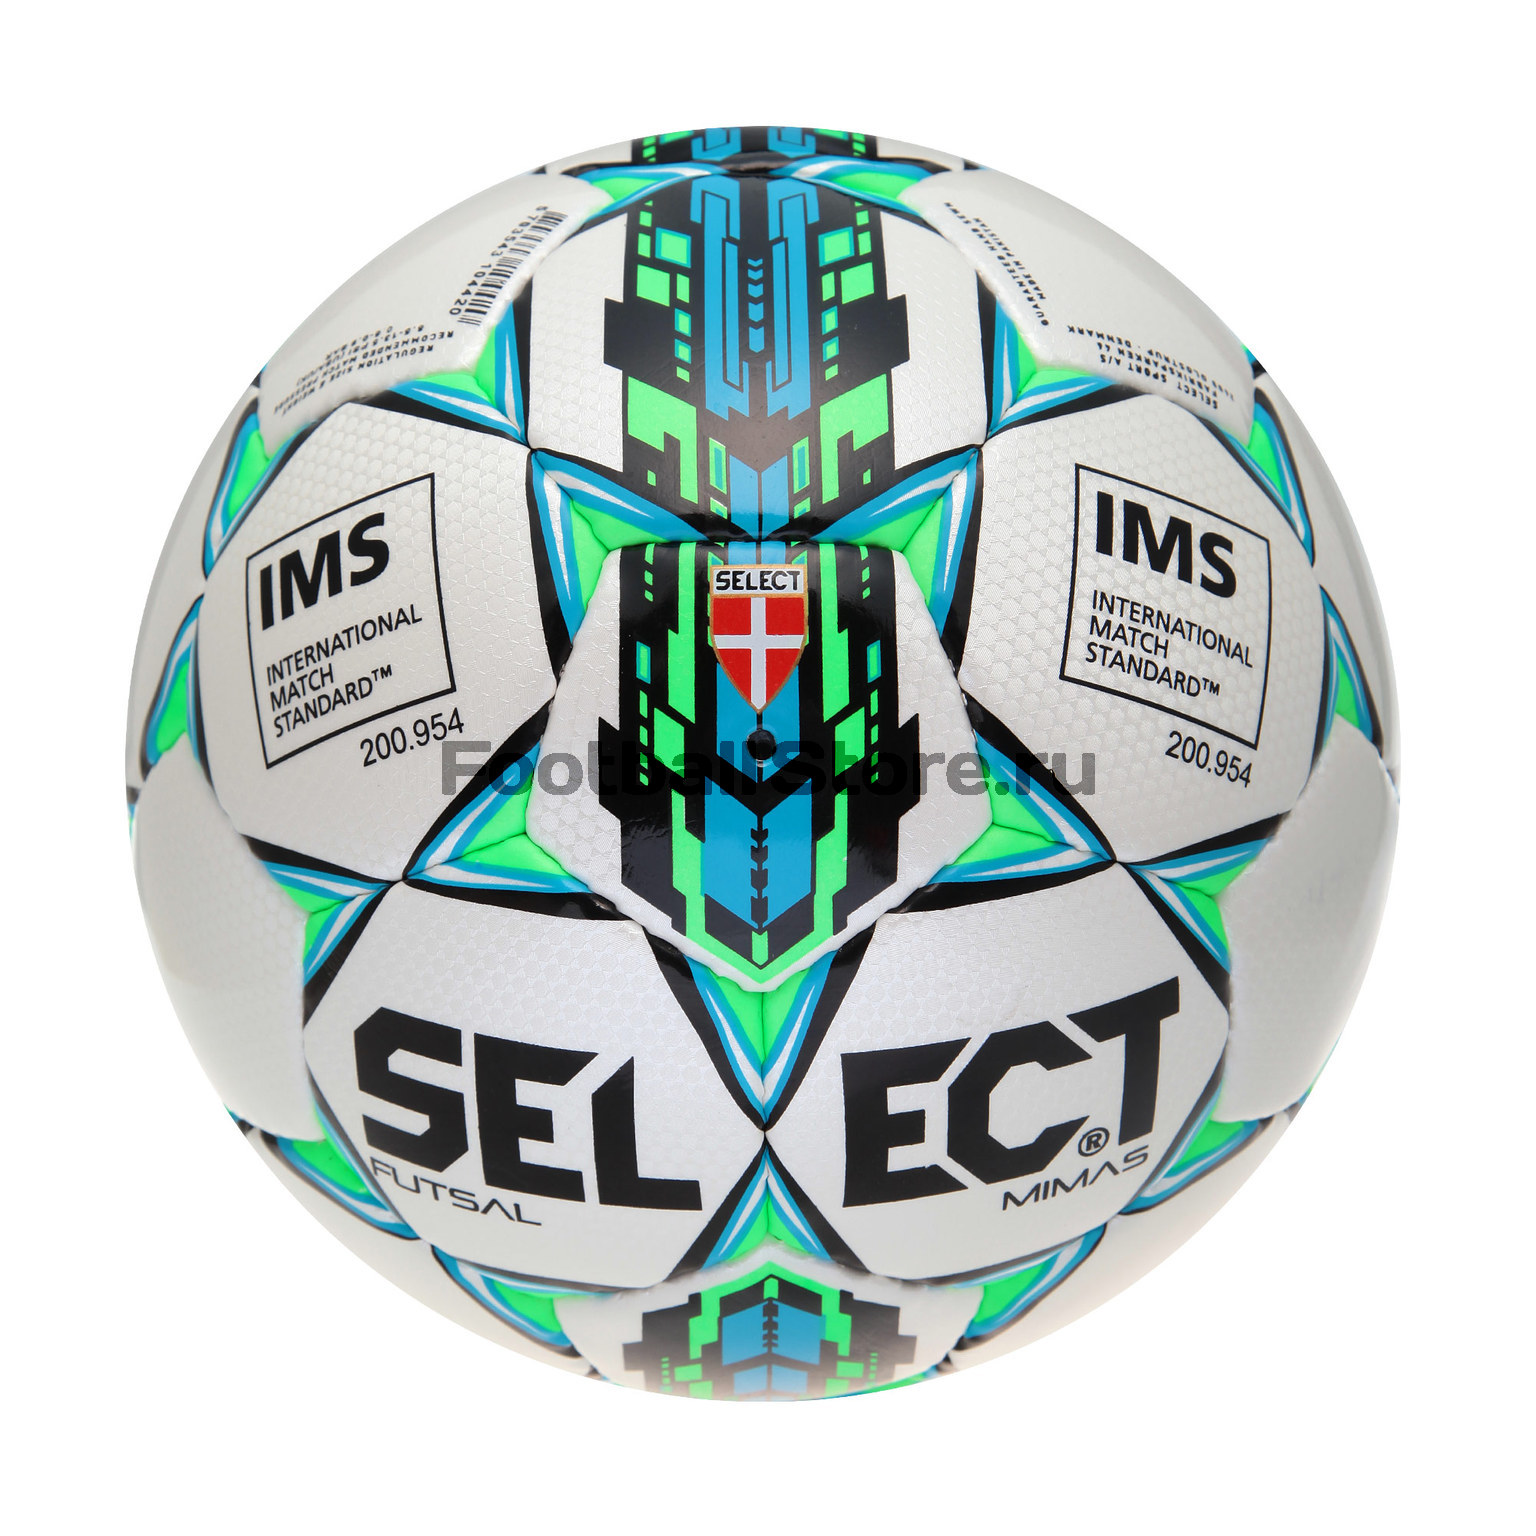 Футзальный мяч Select Futsal MIMAS 852608-002